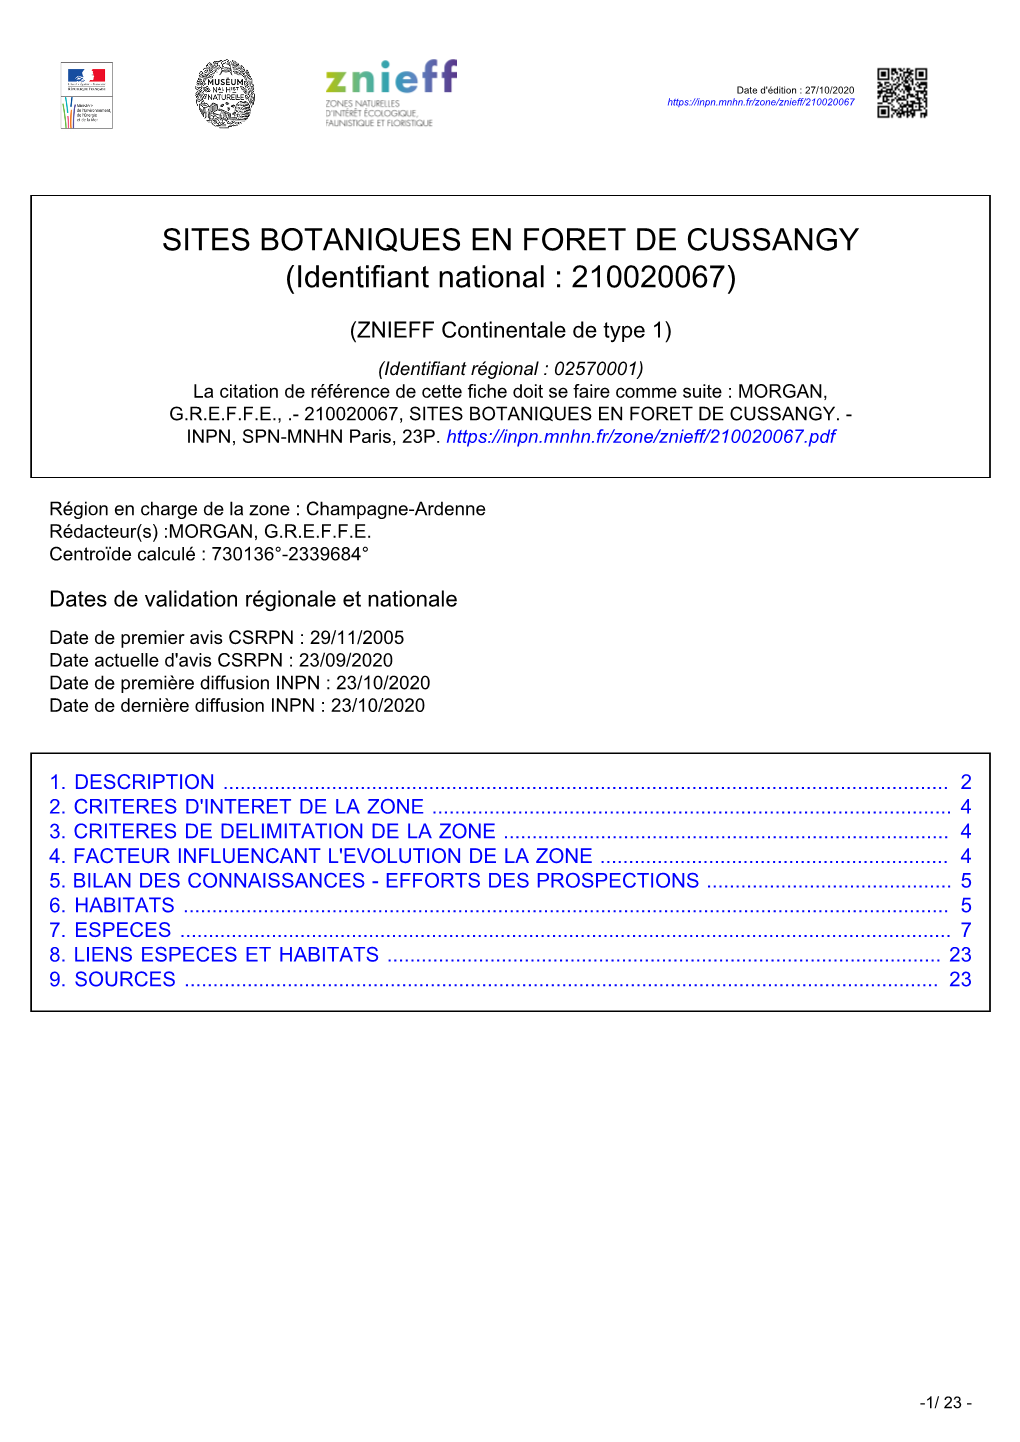 SITES BOTANIQUES EN FORET DE CUSSANGY (Identifiant National : 210020067)